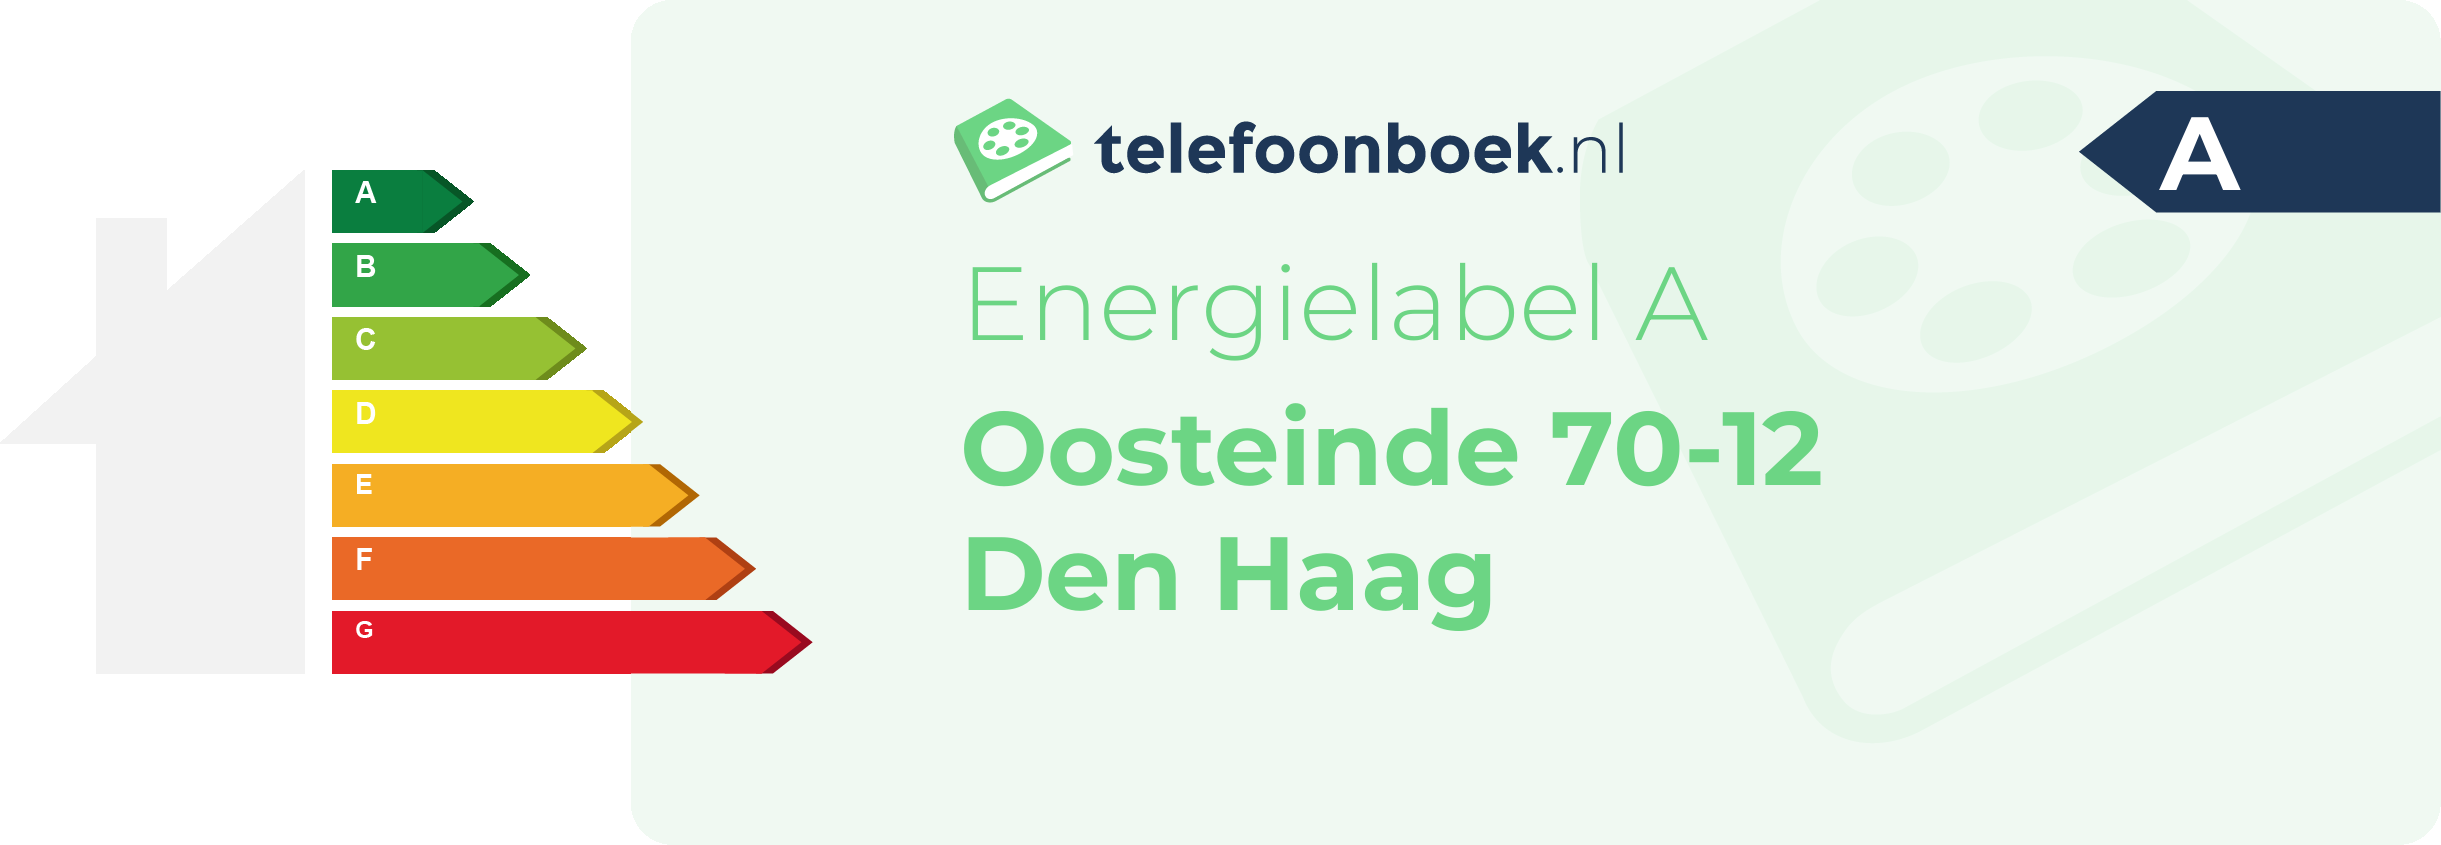 Energielabel Oosteinde 70-12 Den Haag